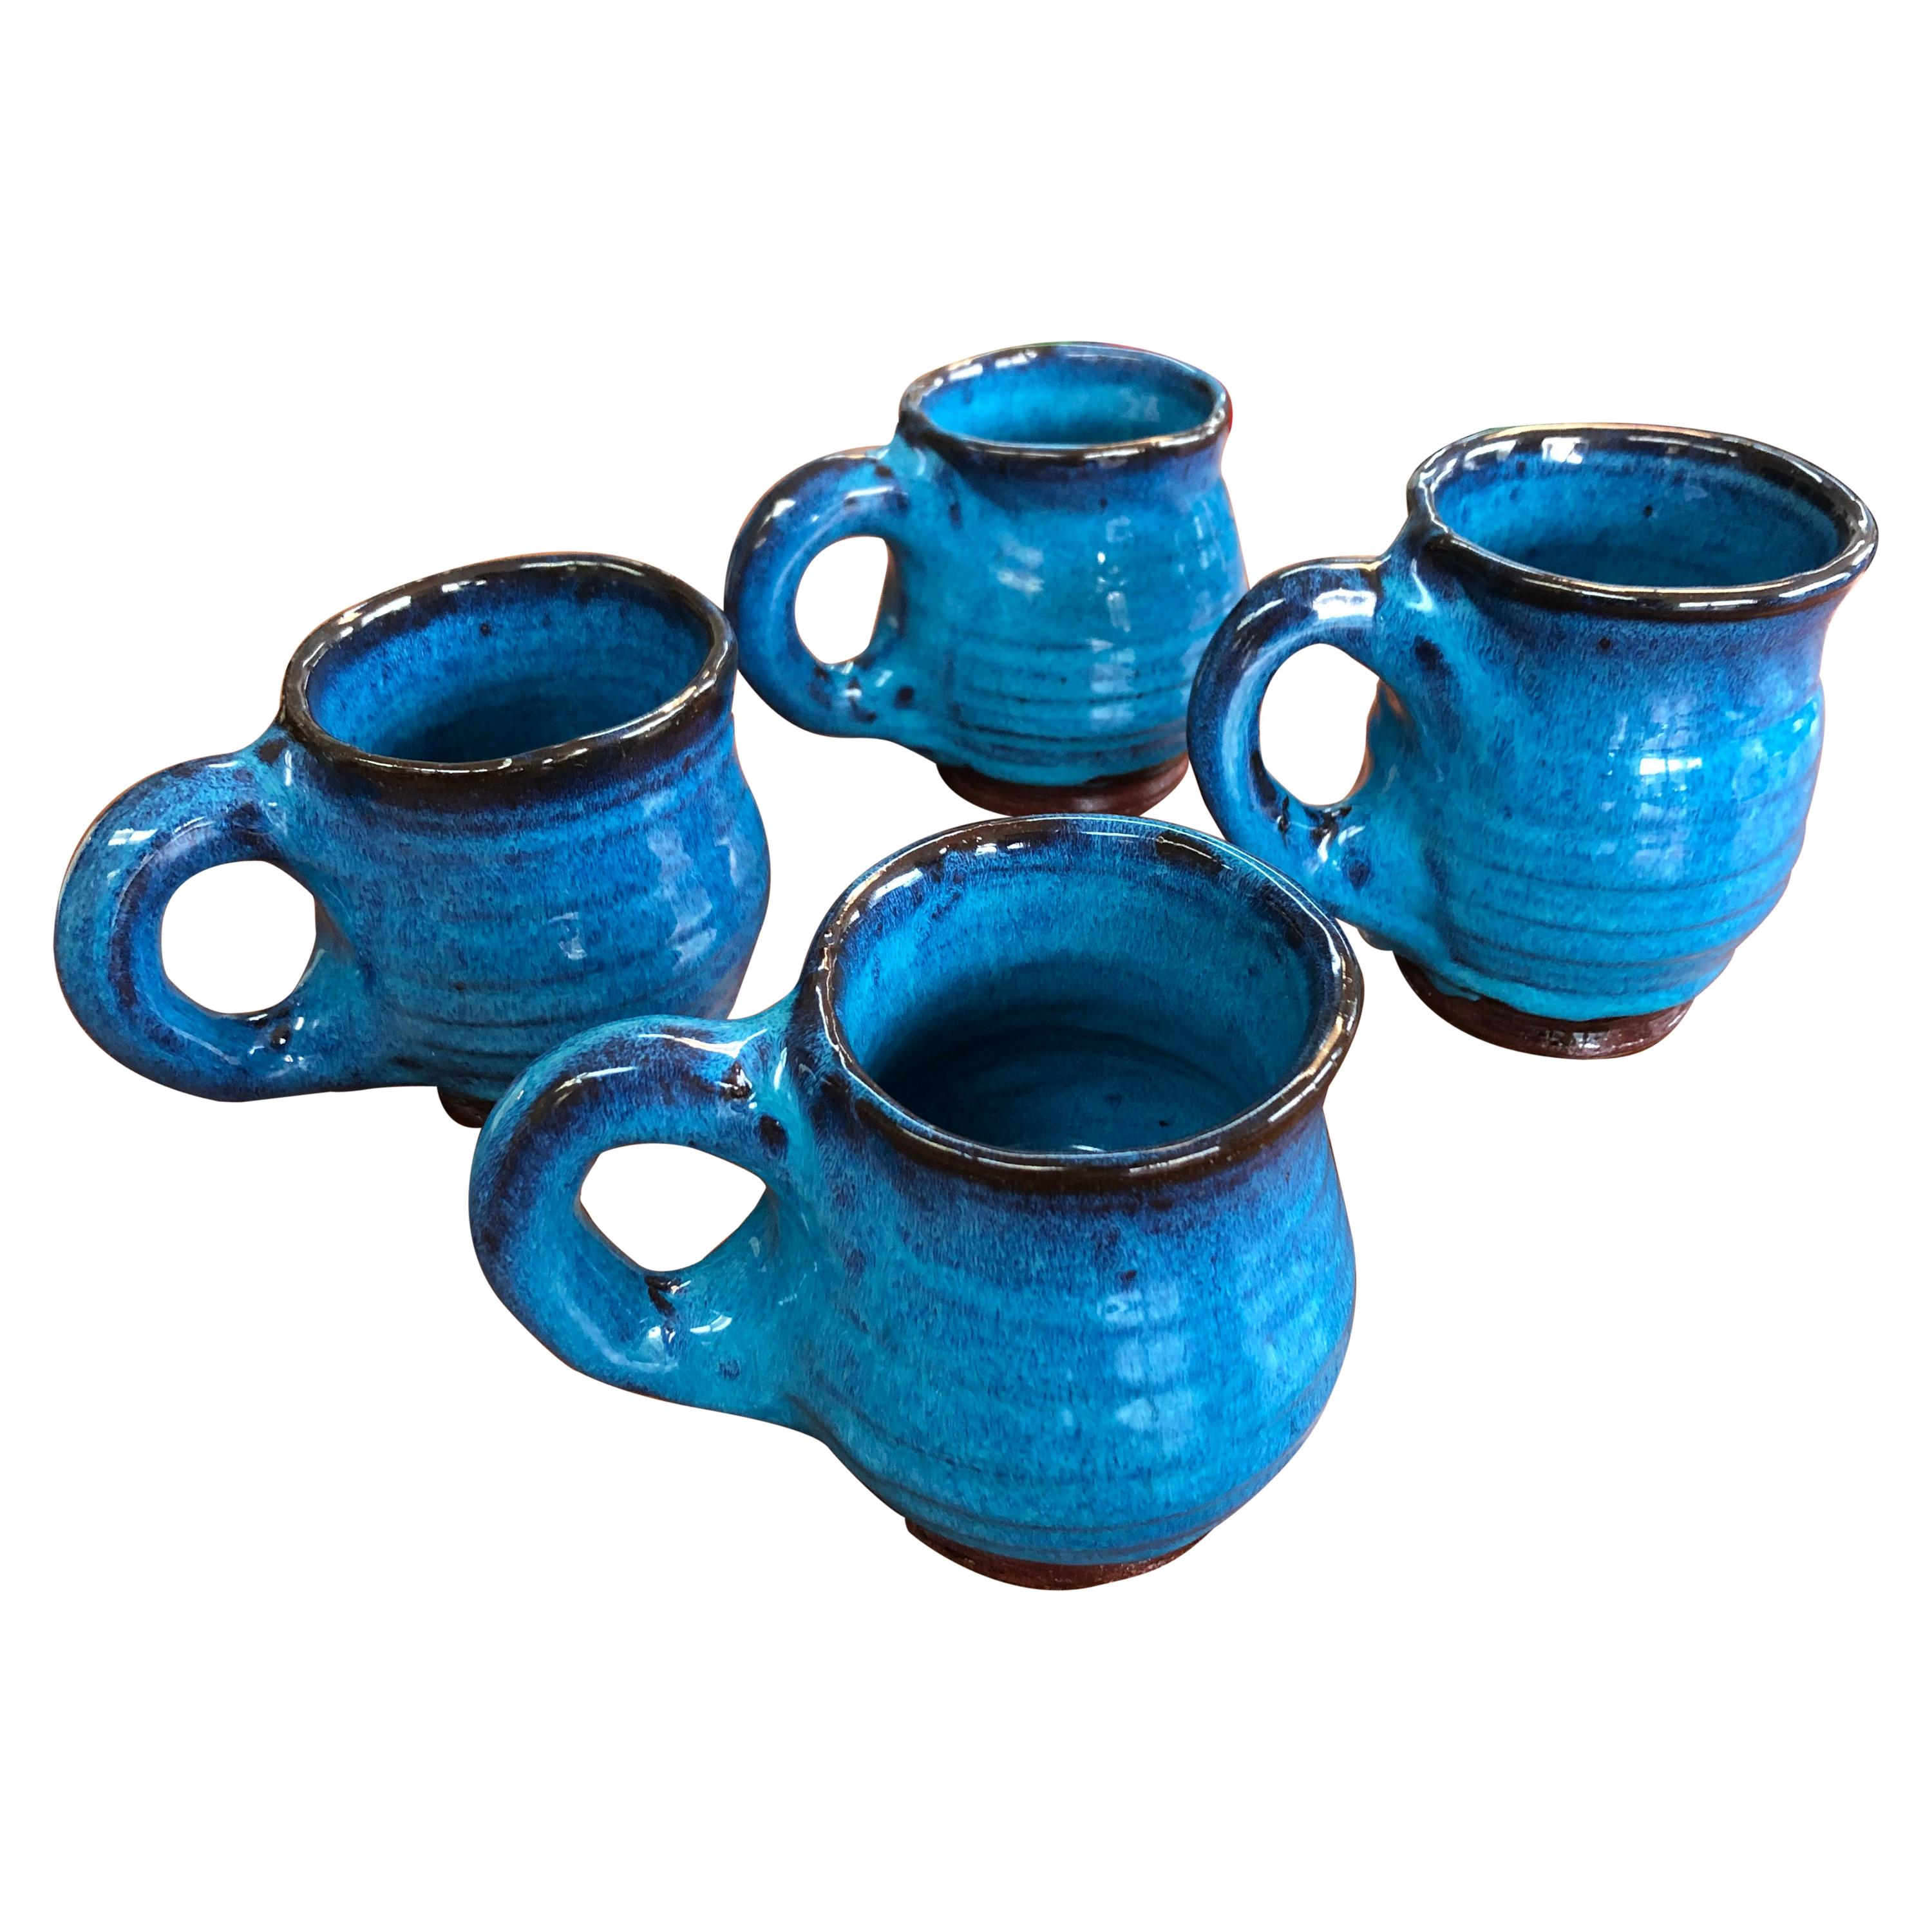 1992 Vintage Harding Black Glazed Pottery Mugs